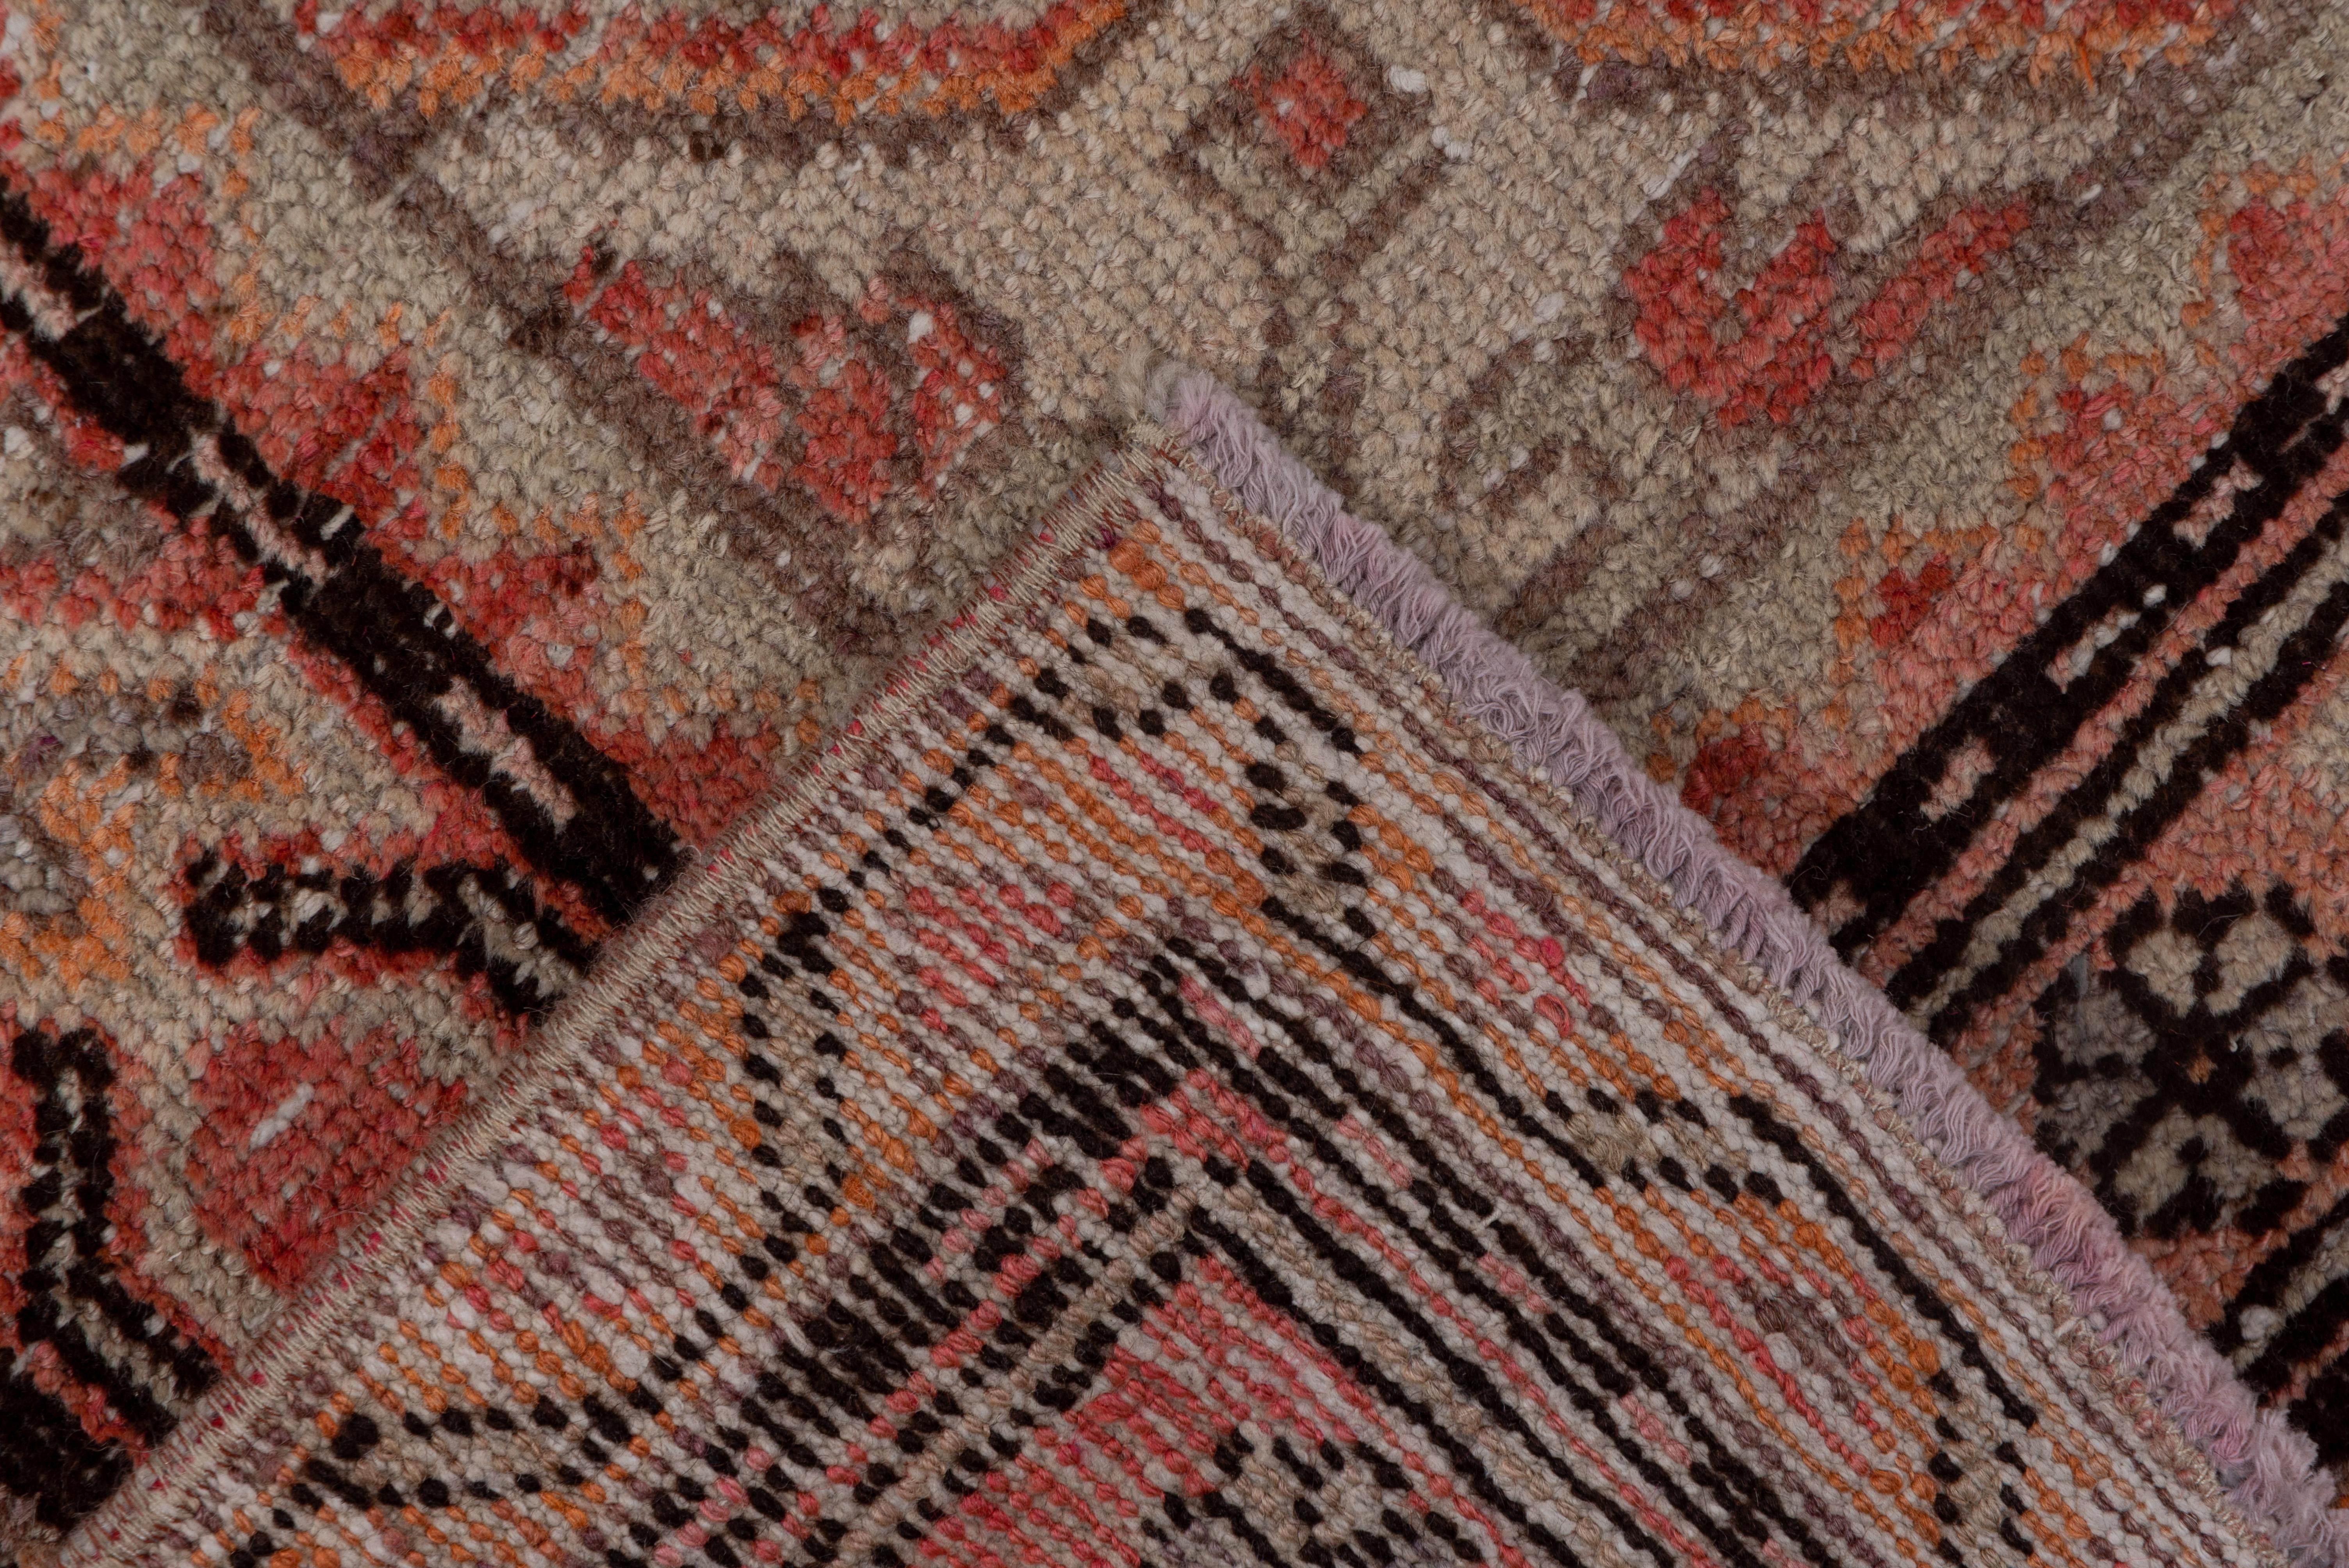 Wool Antique Tribal Khotan Rug, Pink Red Orange and Light Blue Palette Unusual Design For Sale